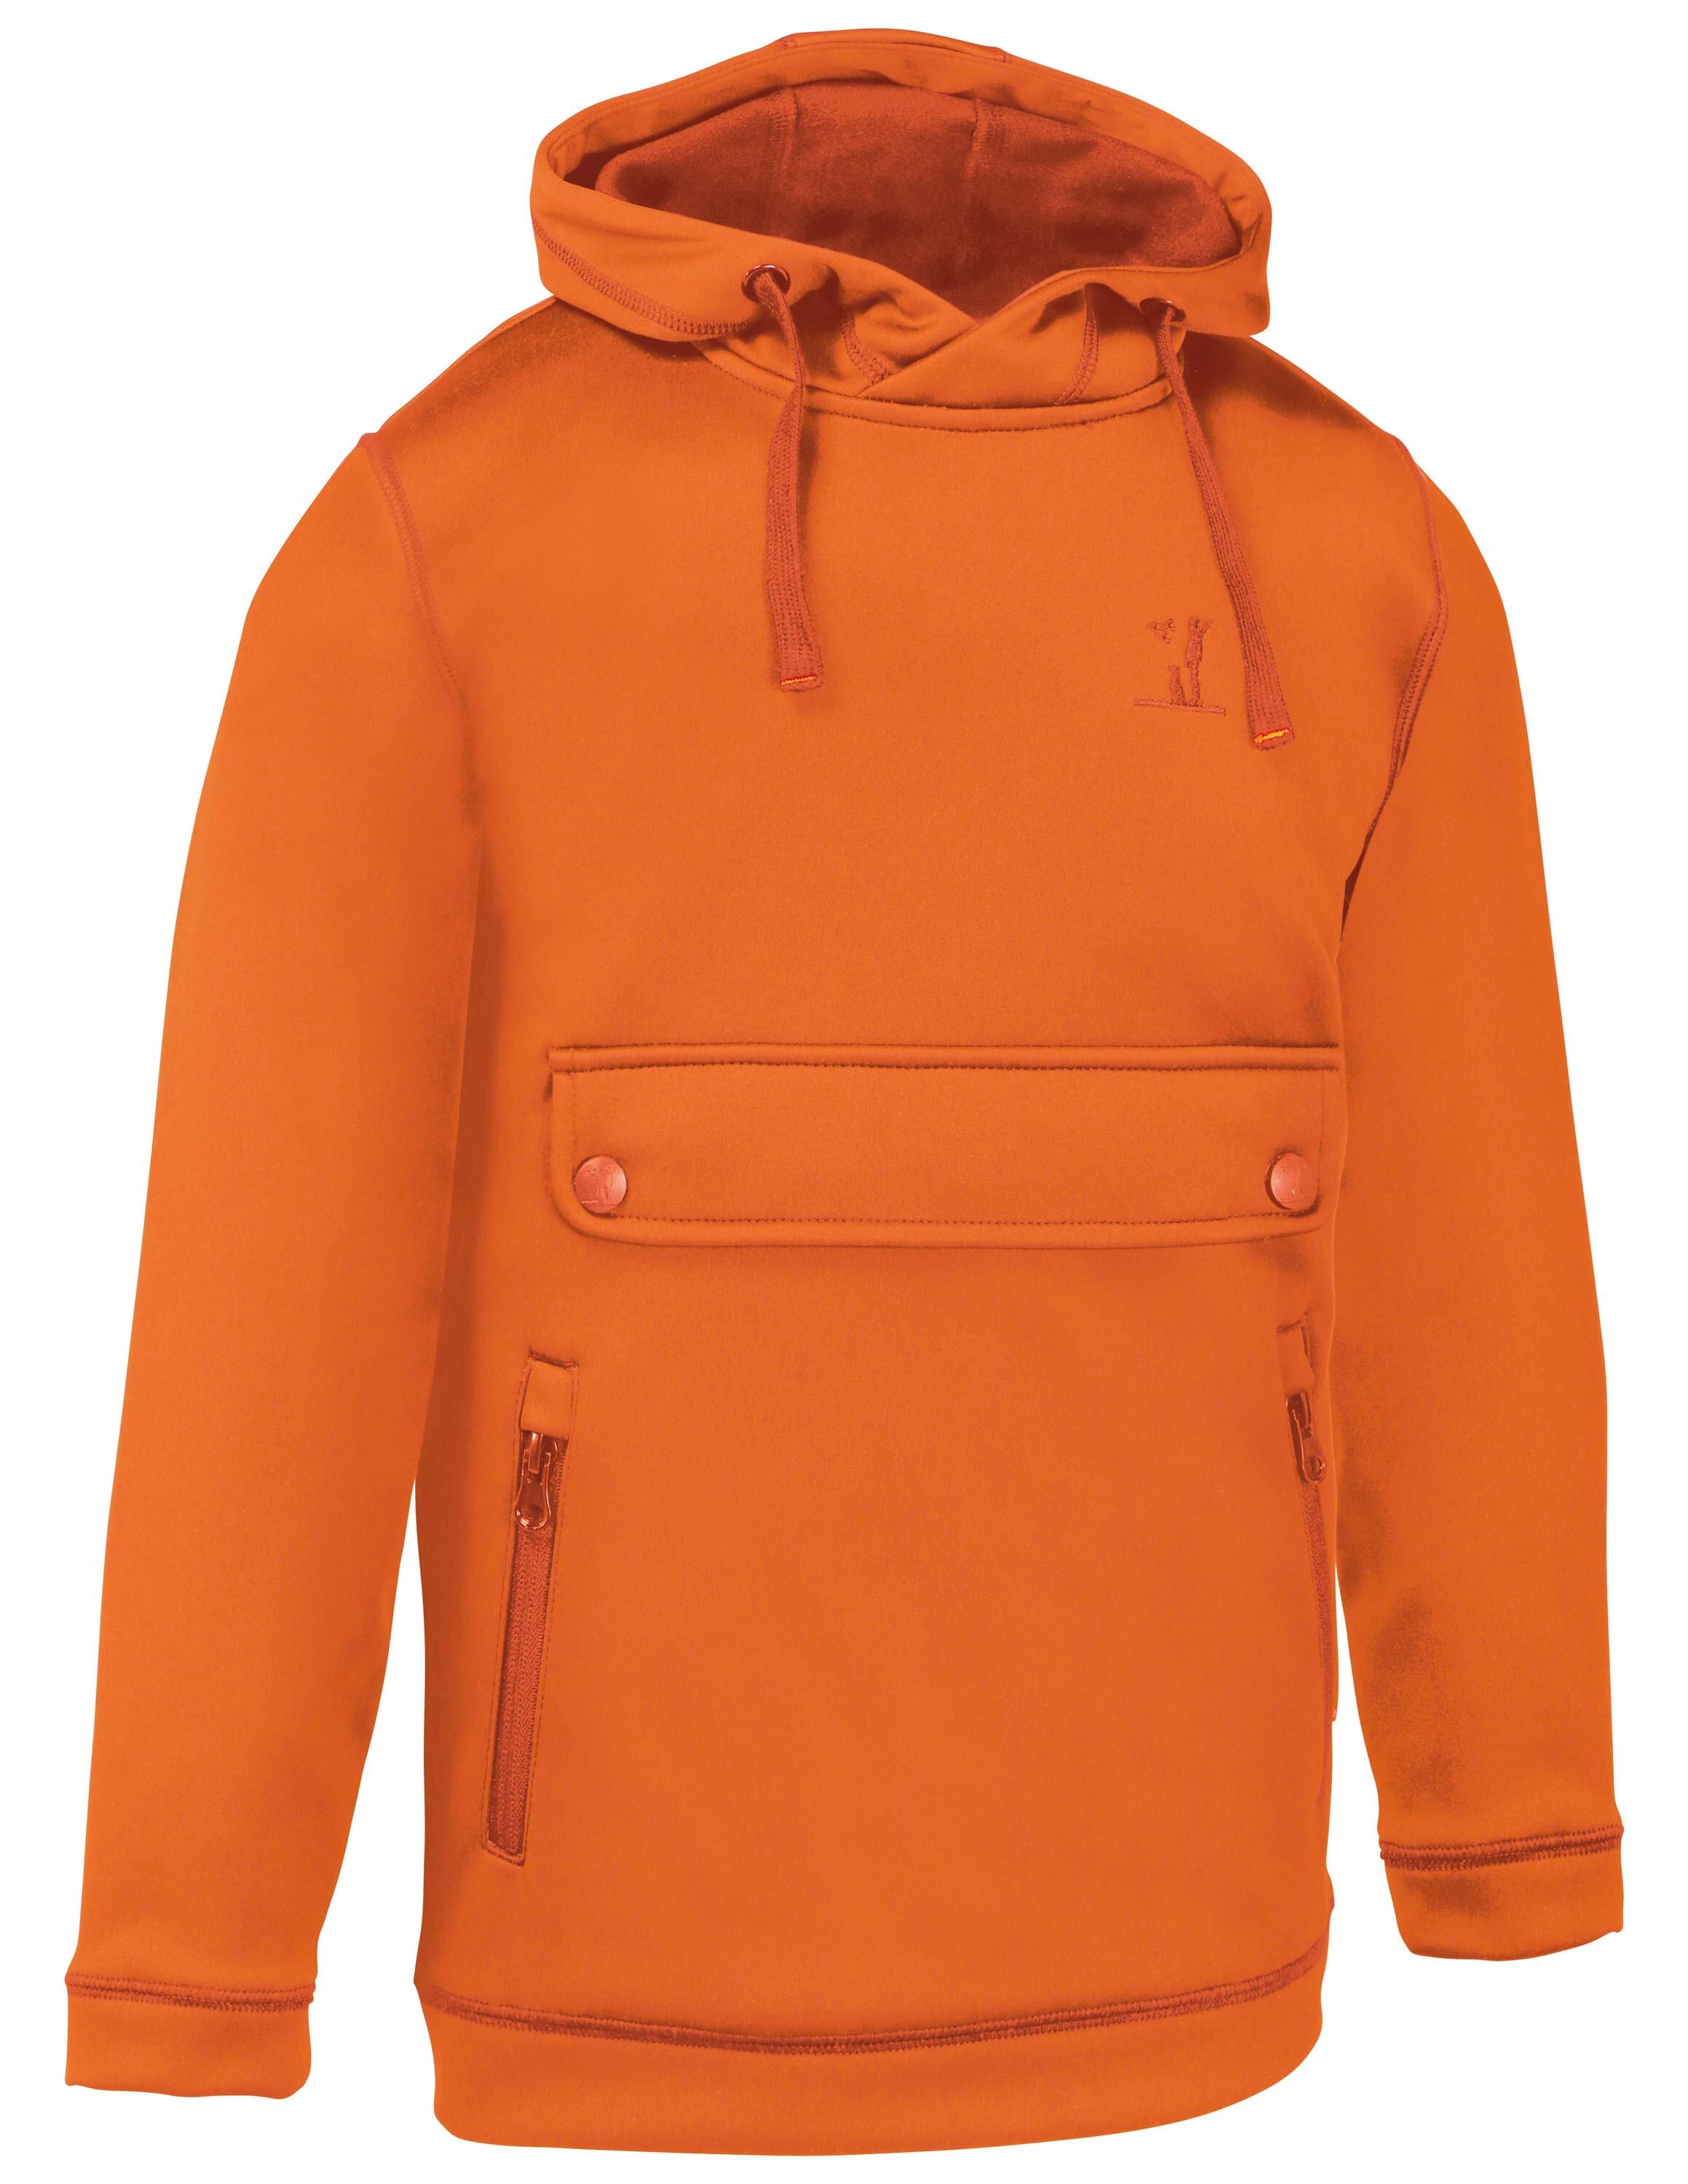 Orange Kapuzenhoodie kaufen für in Kinder Percussion